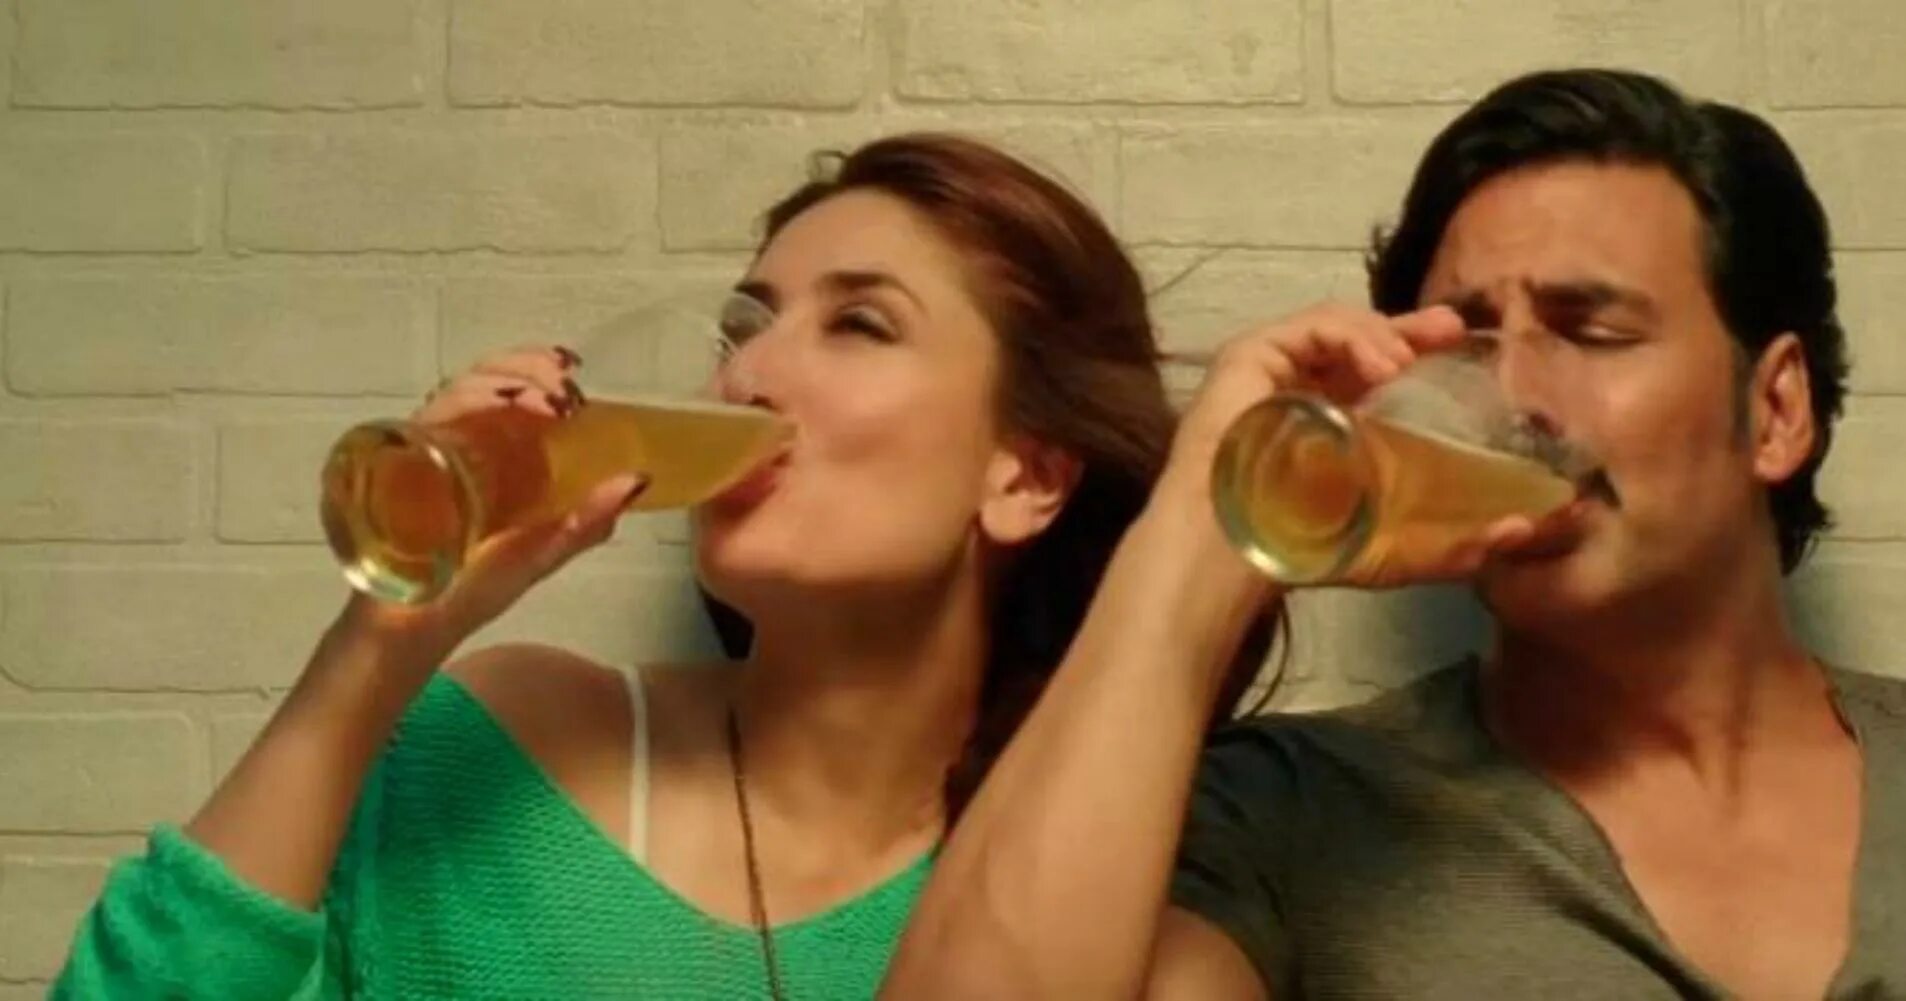 Gabbar алкоголь. Spilling Water while drinking movie Scene. Drunk scenes